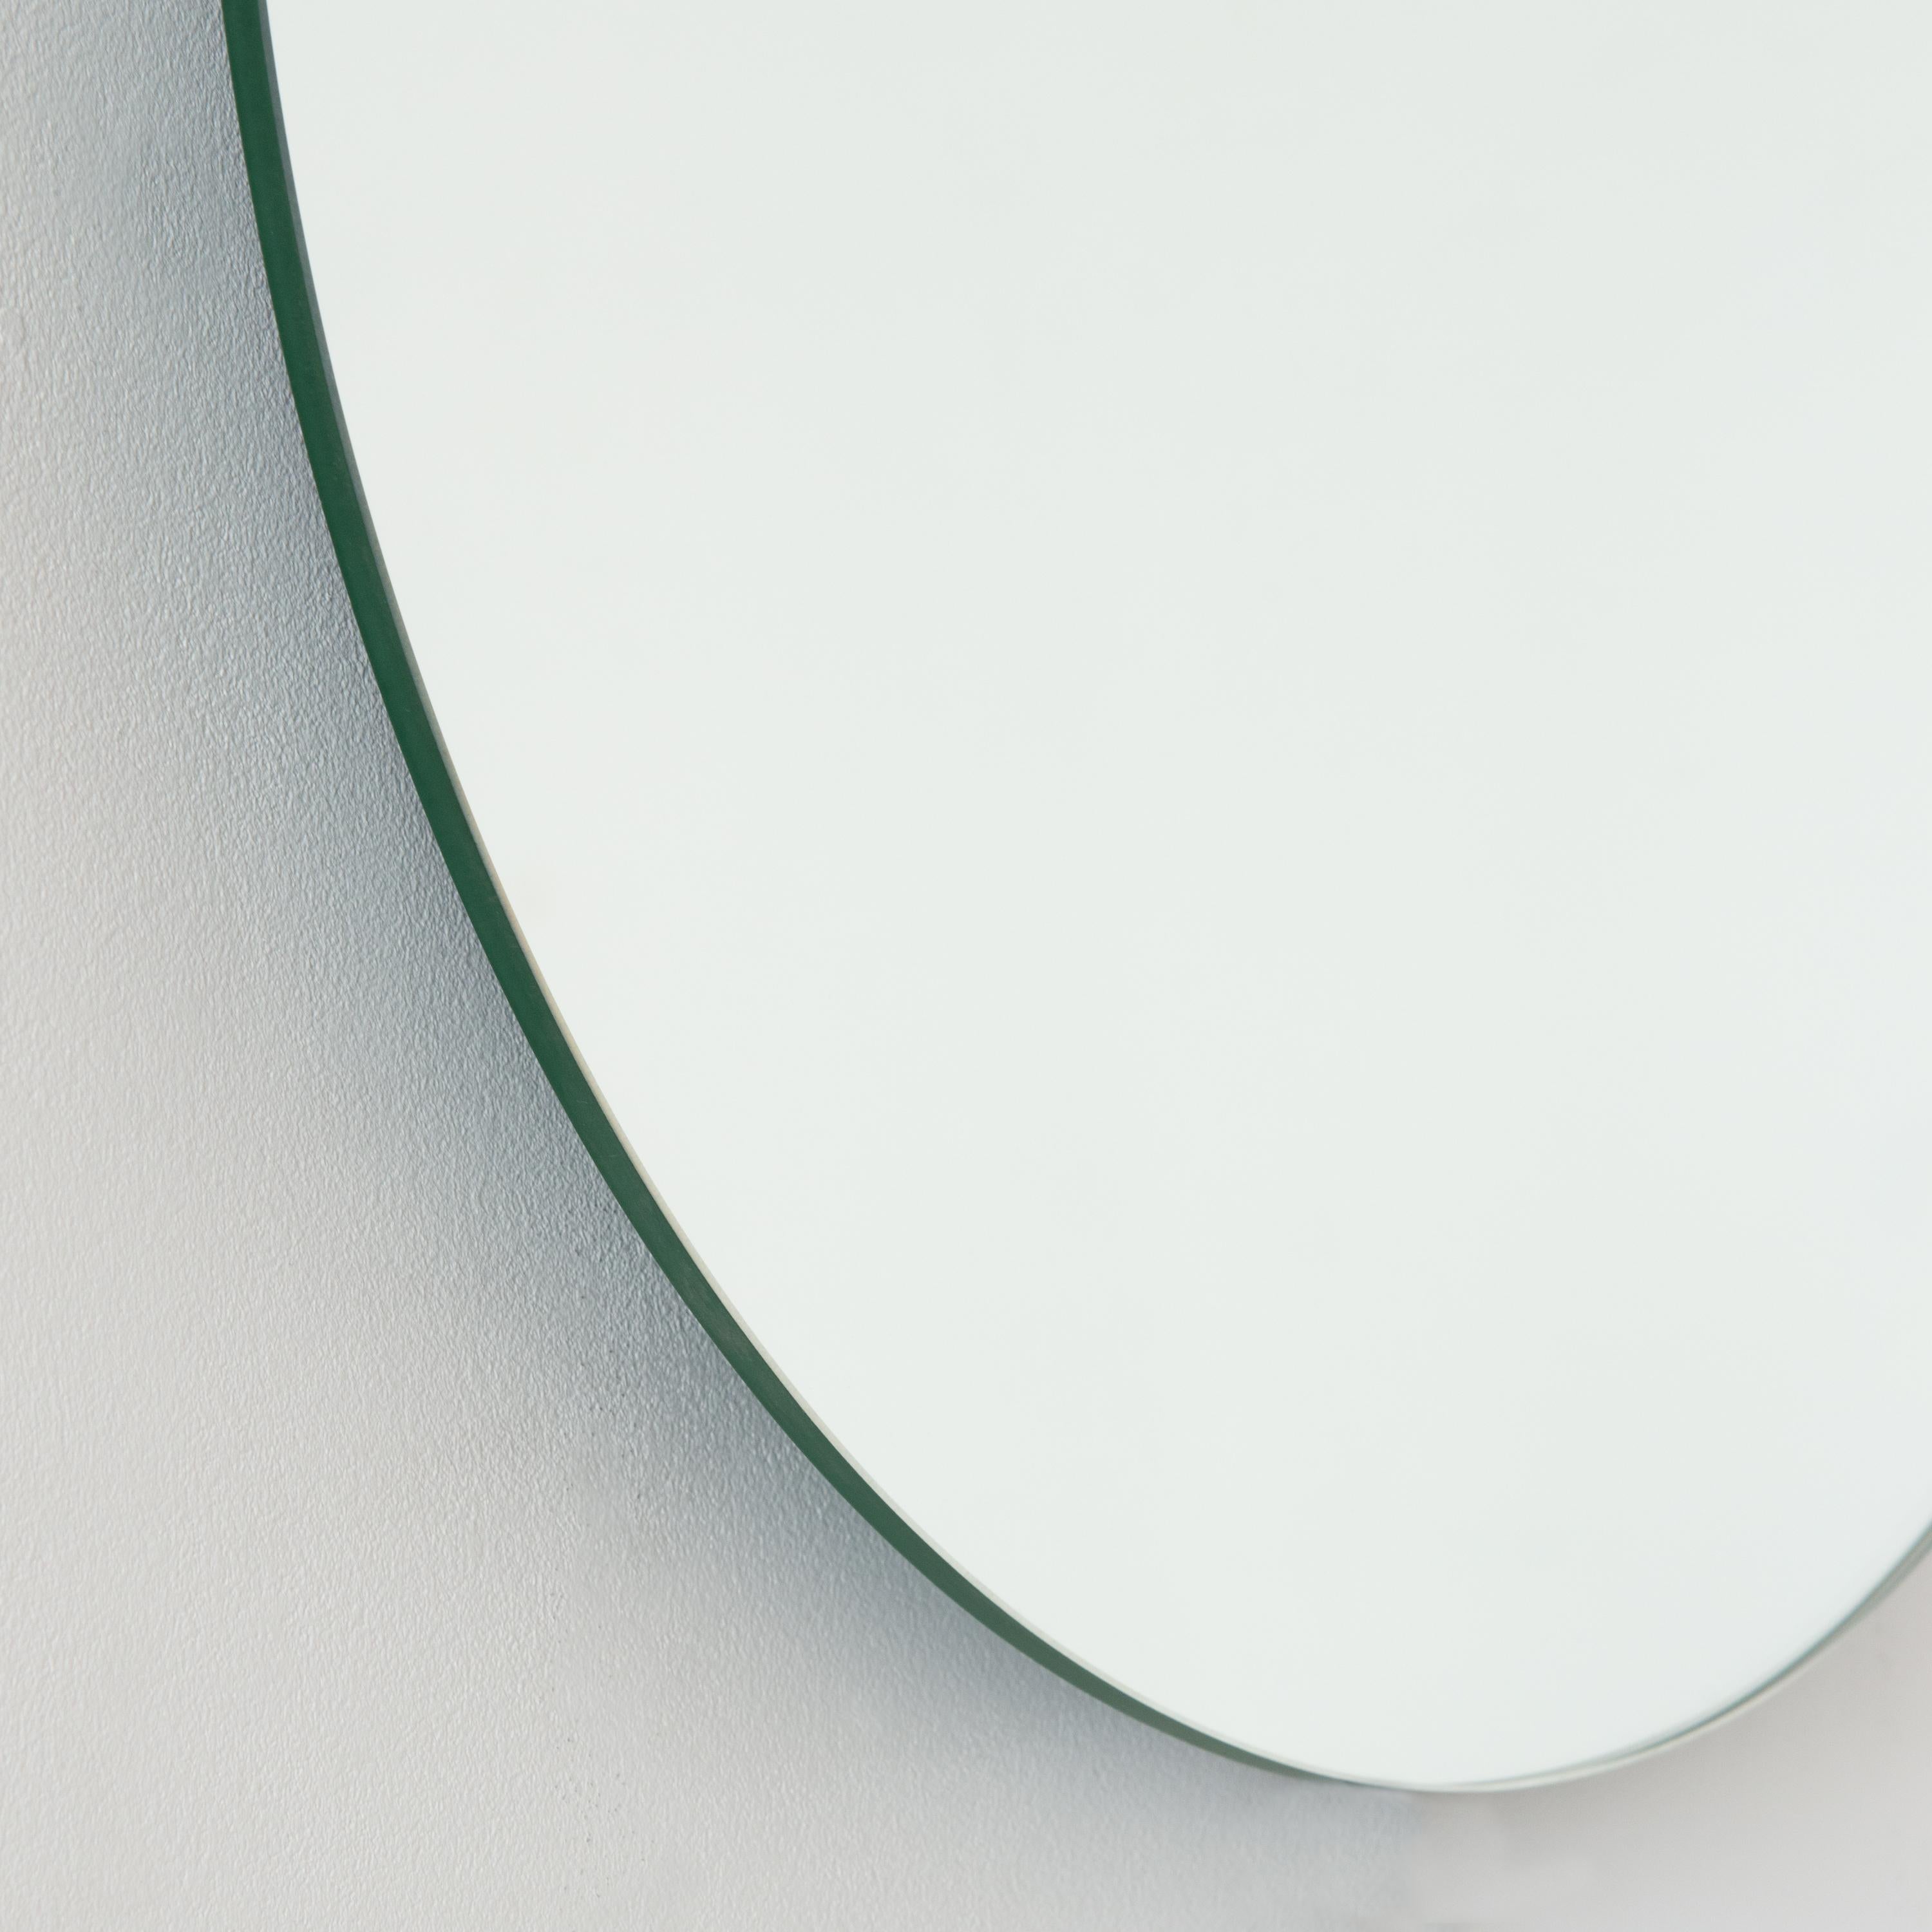 European Orbis Gold Tinted Round Frameless Minimalist Modern Mirror, Medium For Sale